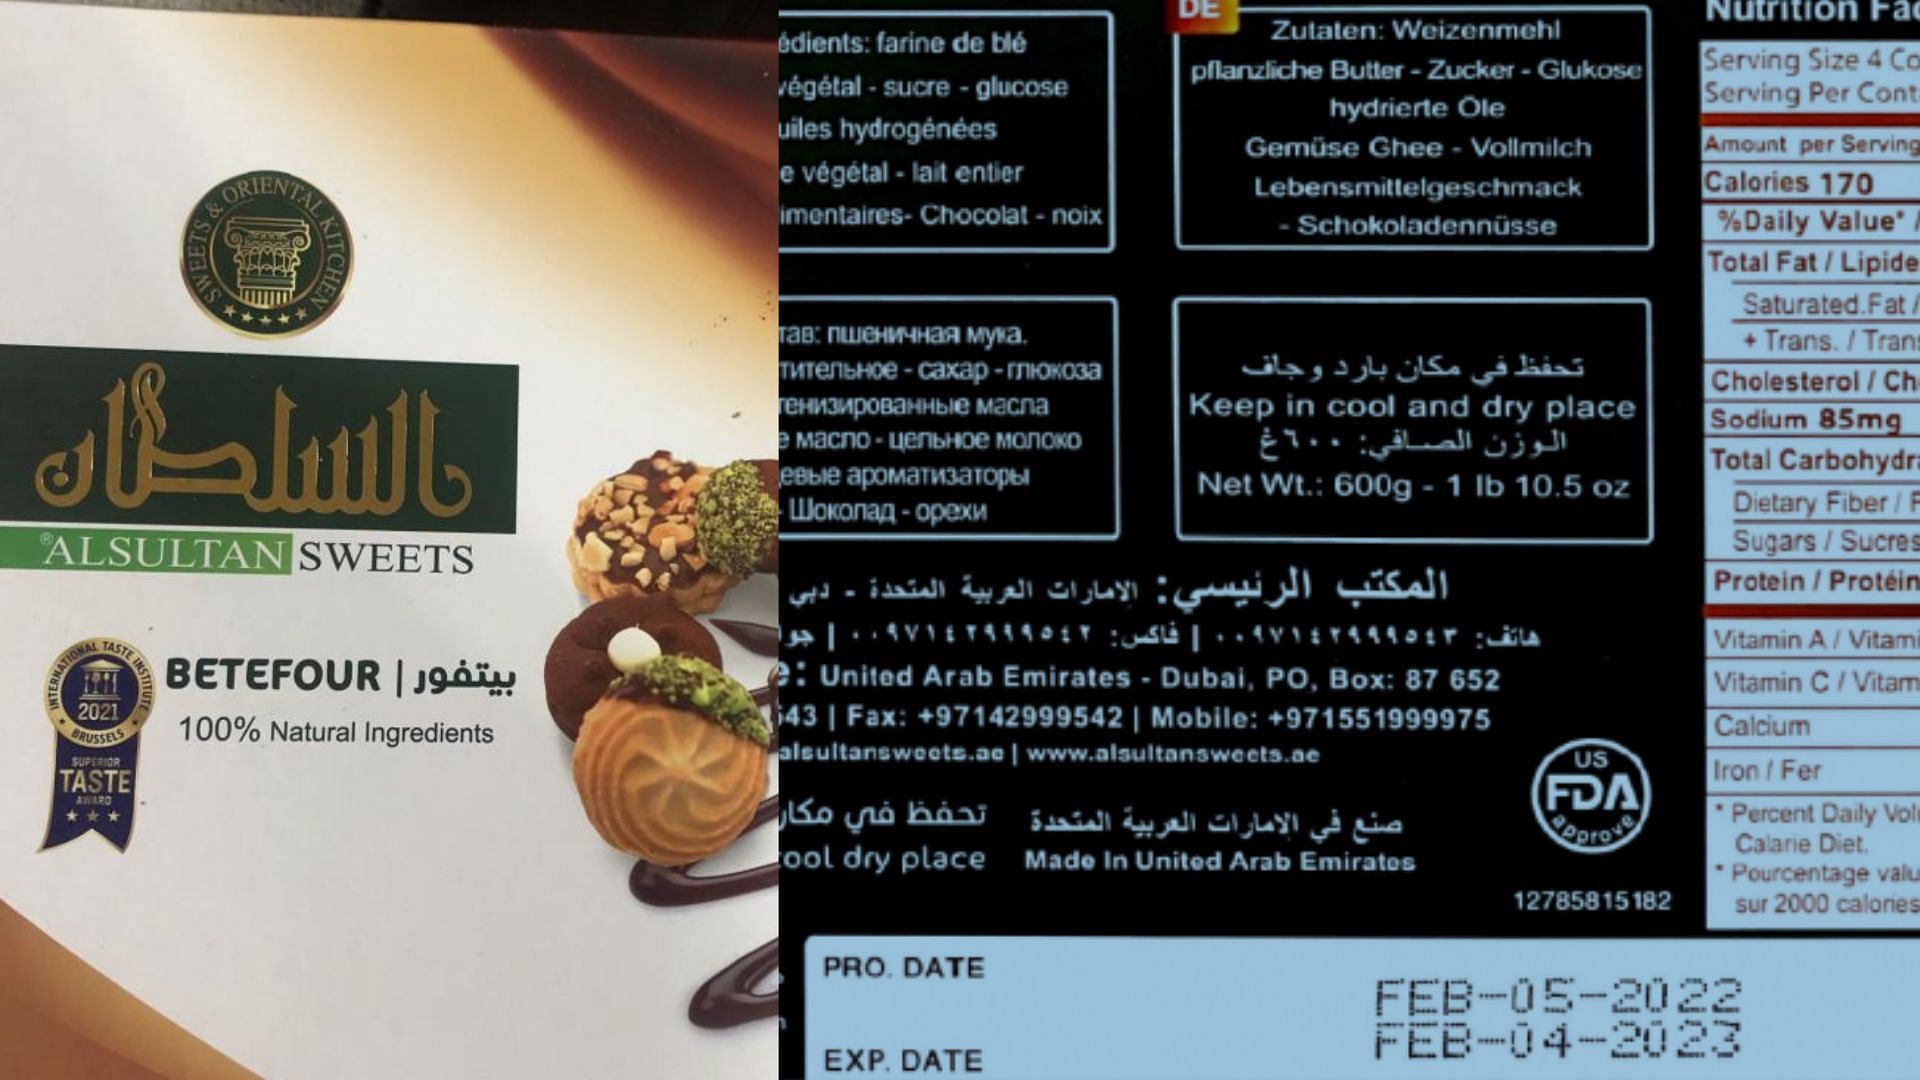 recalled package of Al Sultan Betefour (Image via FDA)